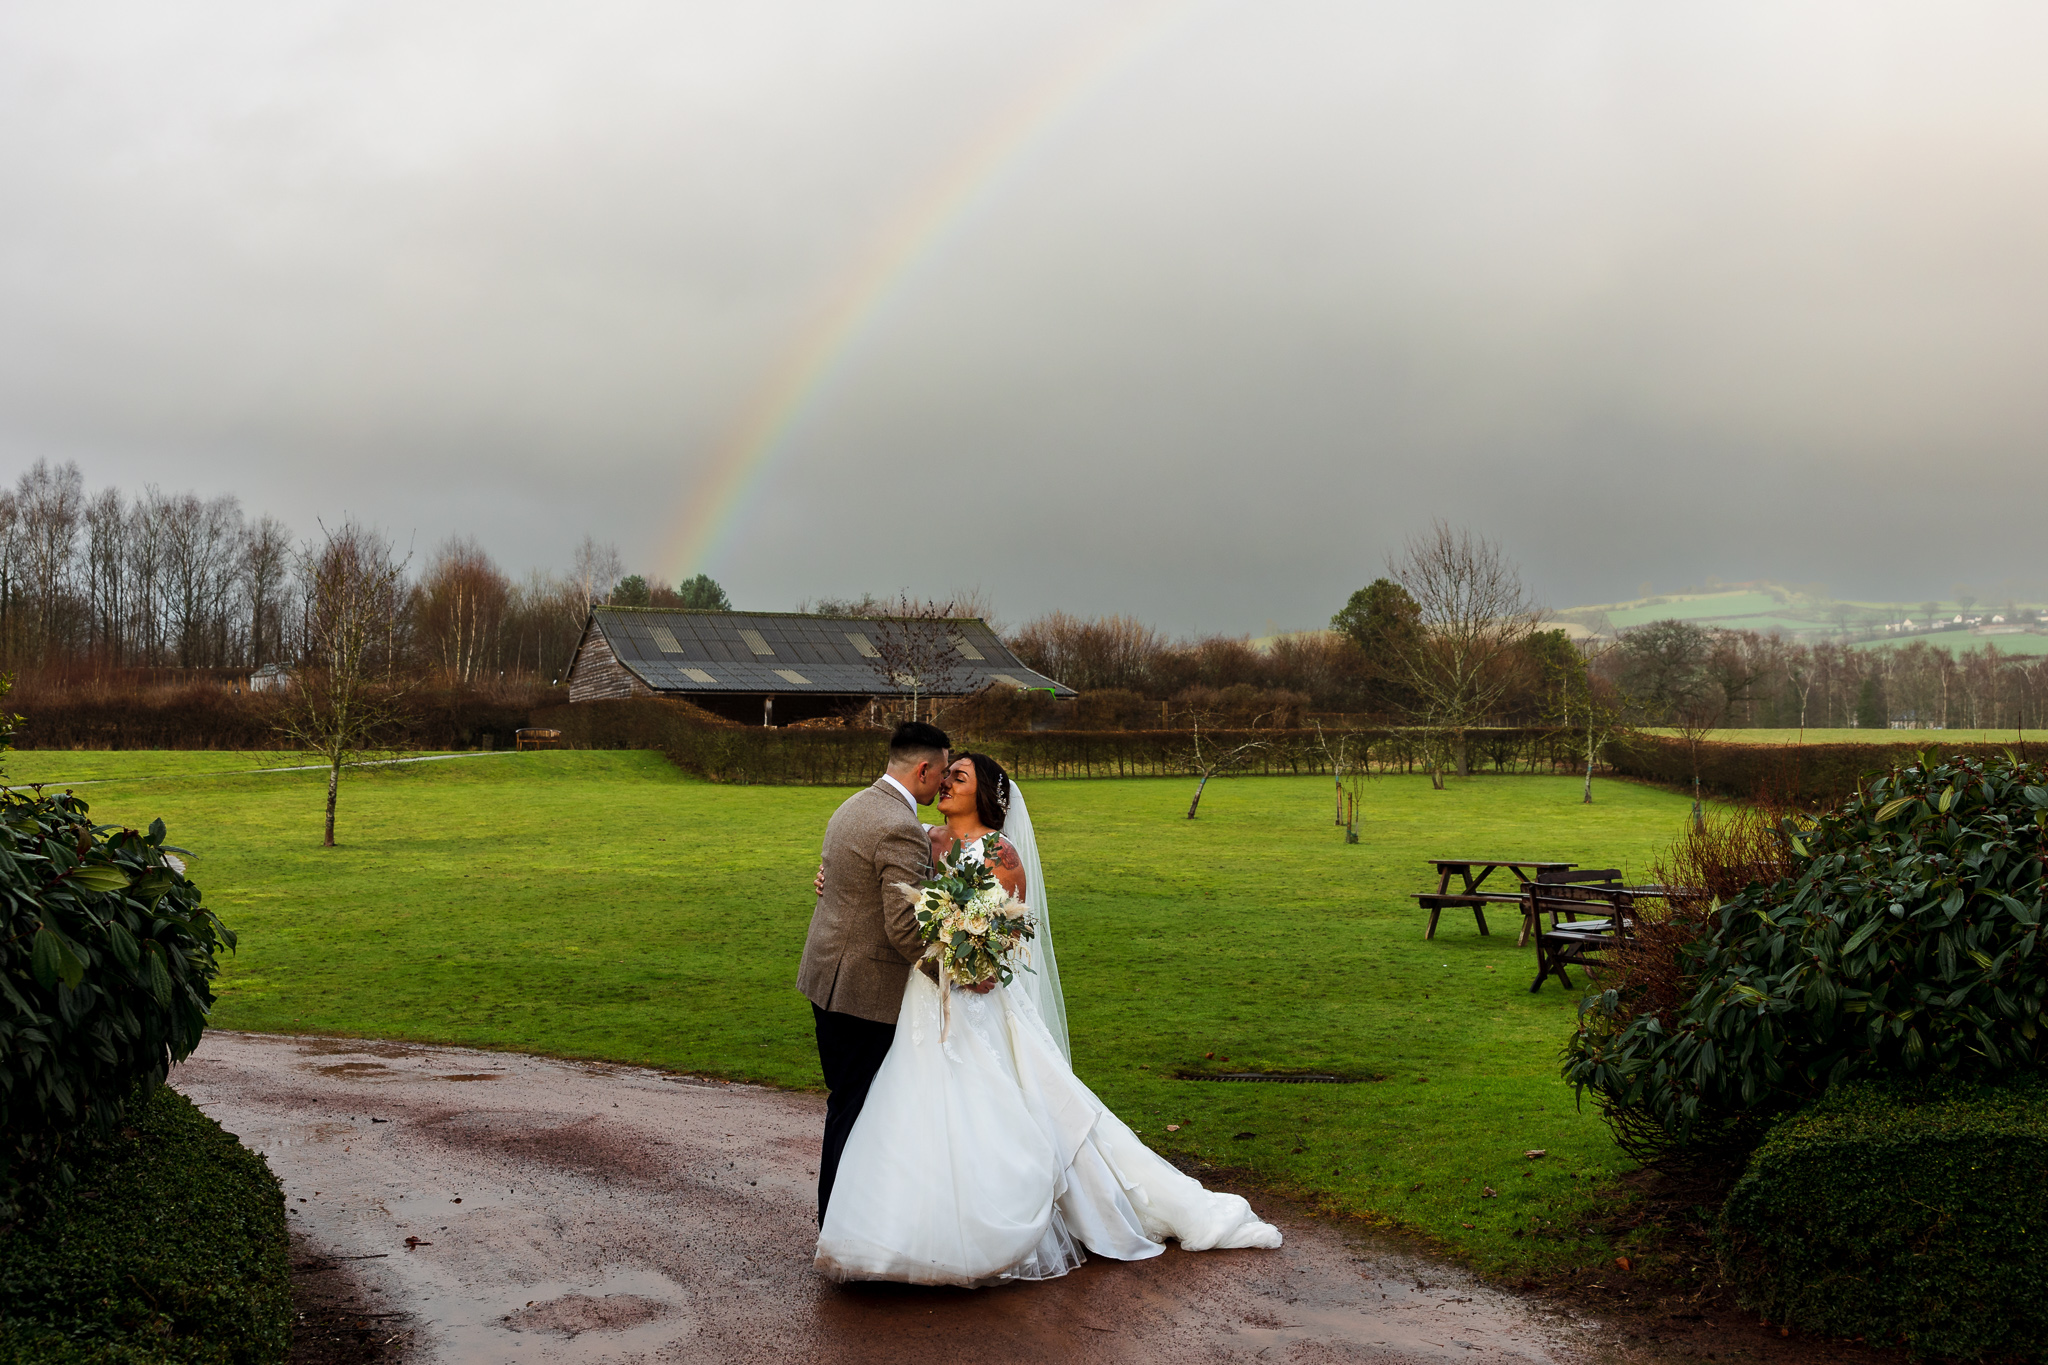 The Barn at Brynich Wedding - Rainbow